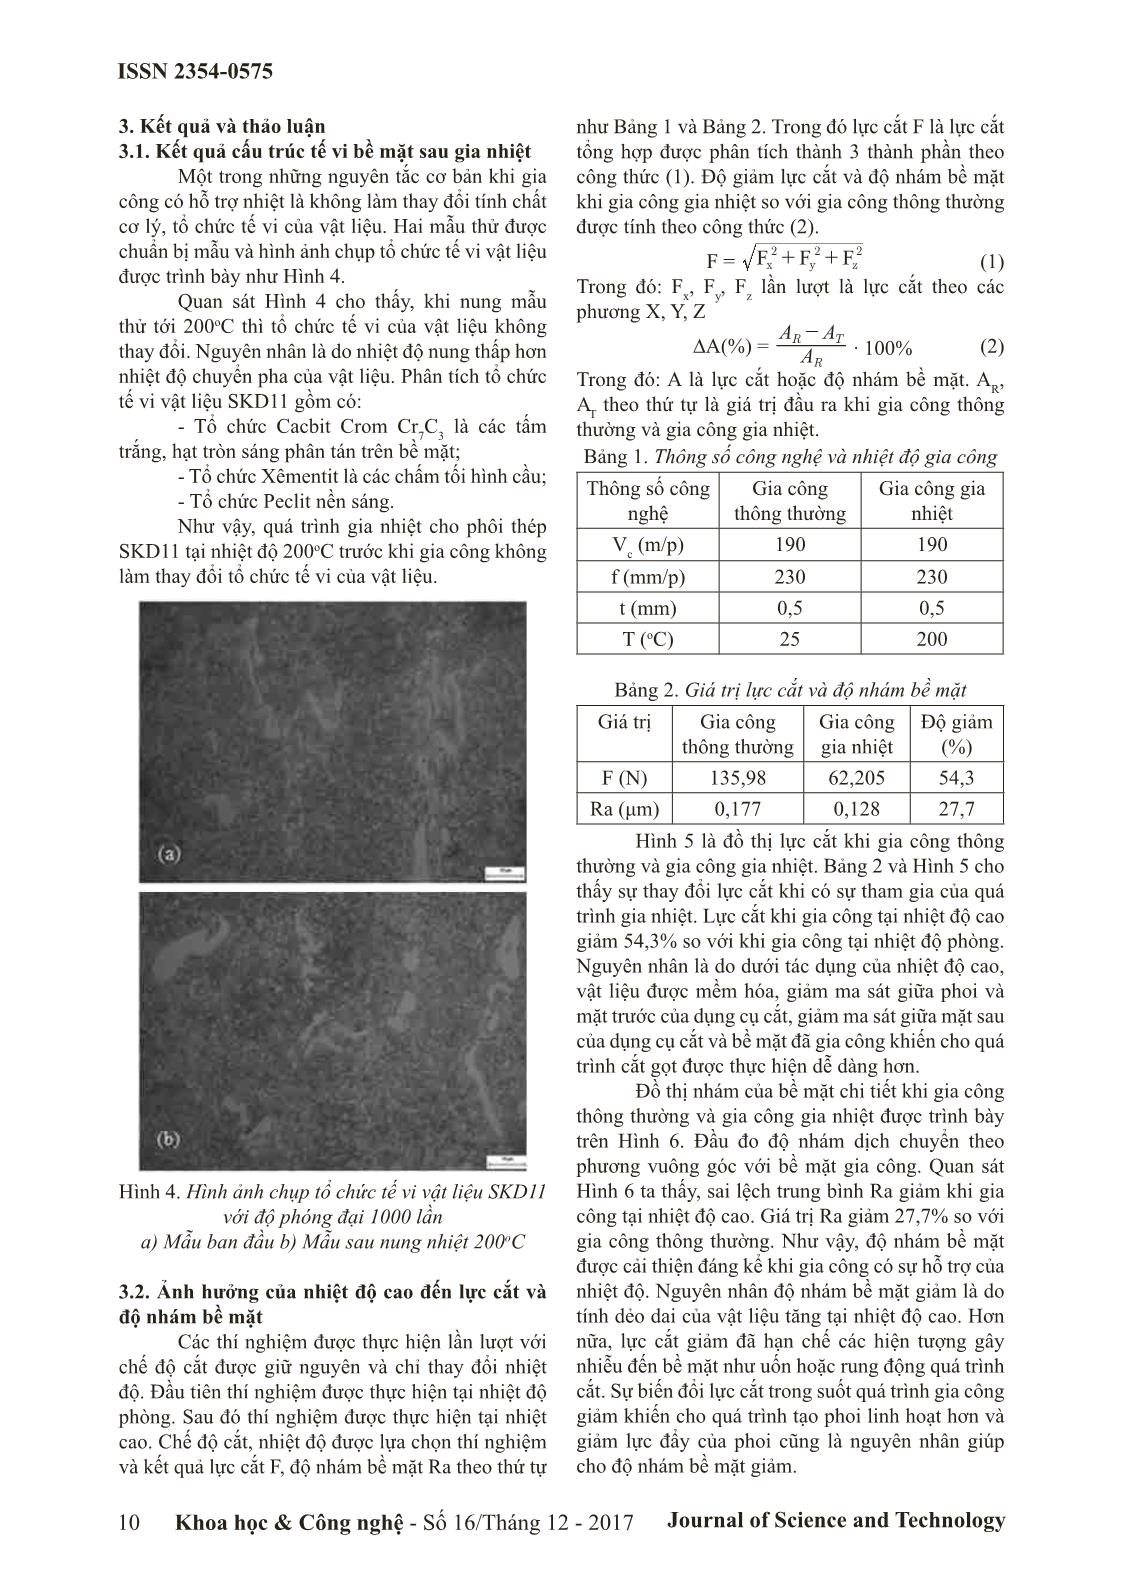 Nghiên cứu ảnh hưởng của quá trình gia nhiệt đến lực cắt và nhám bề mặt khi phay thép SKD11 trang 3